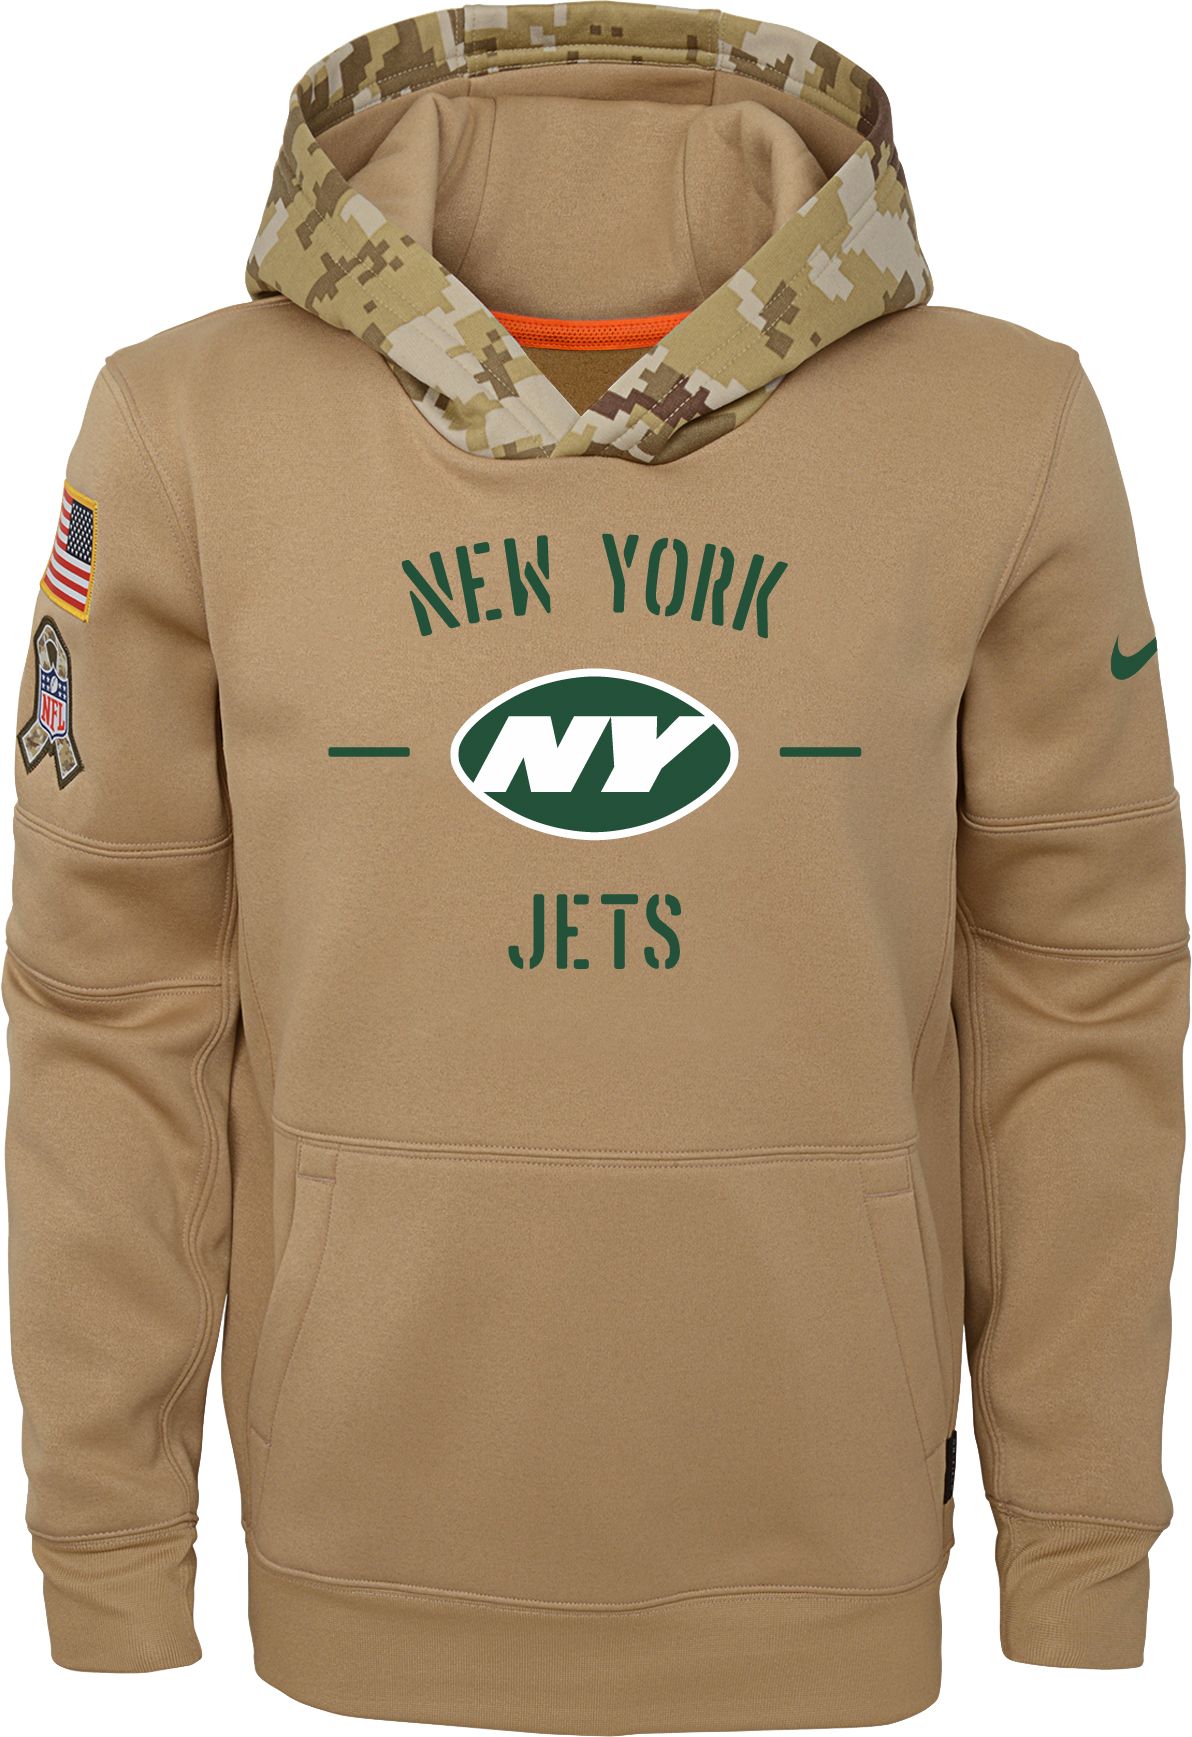 jets military hoodie